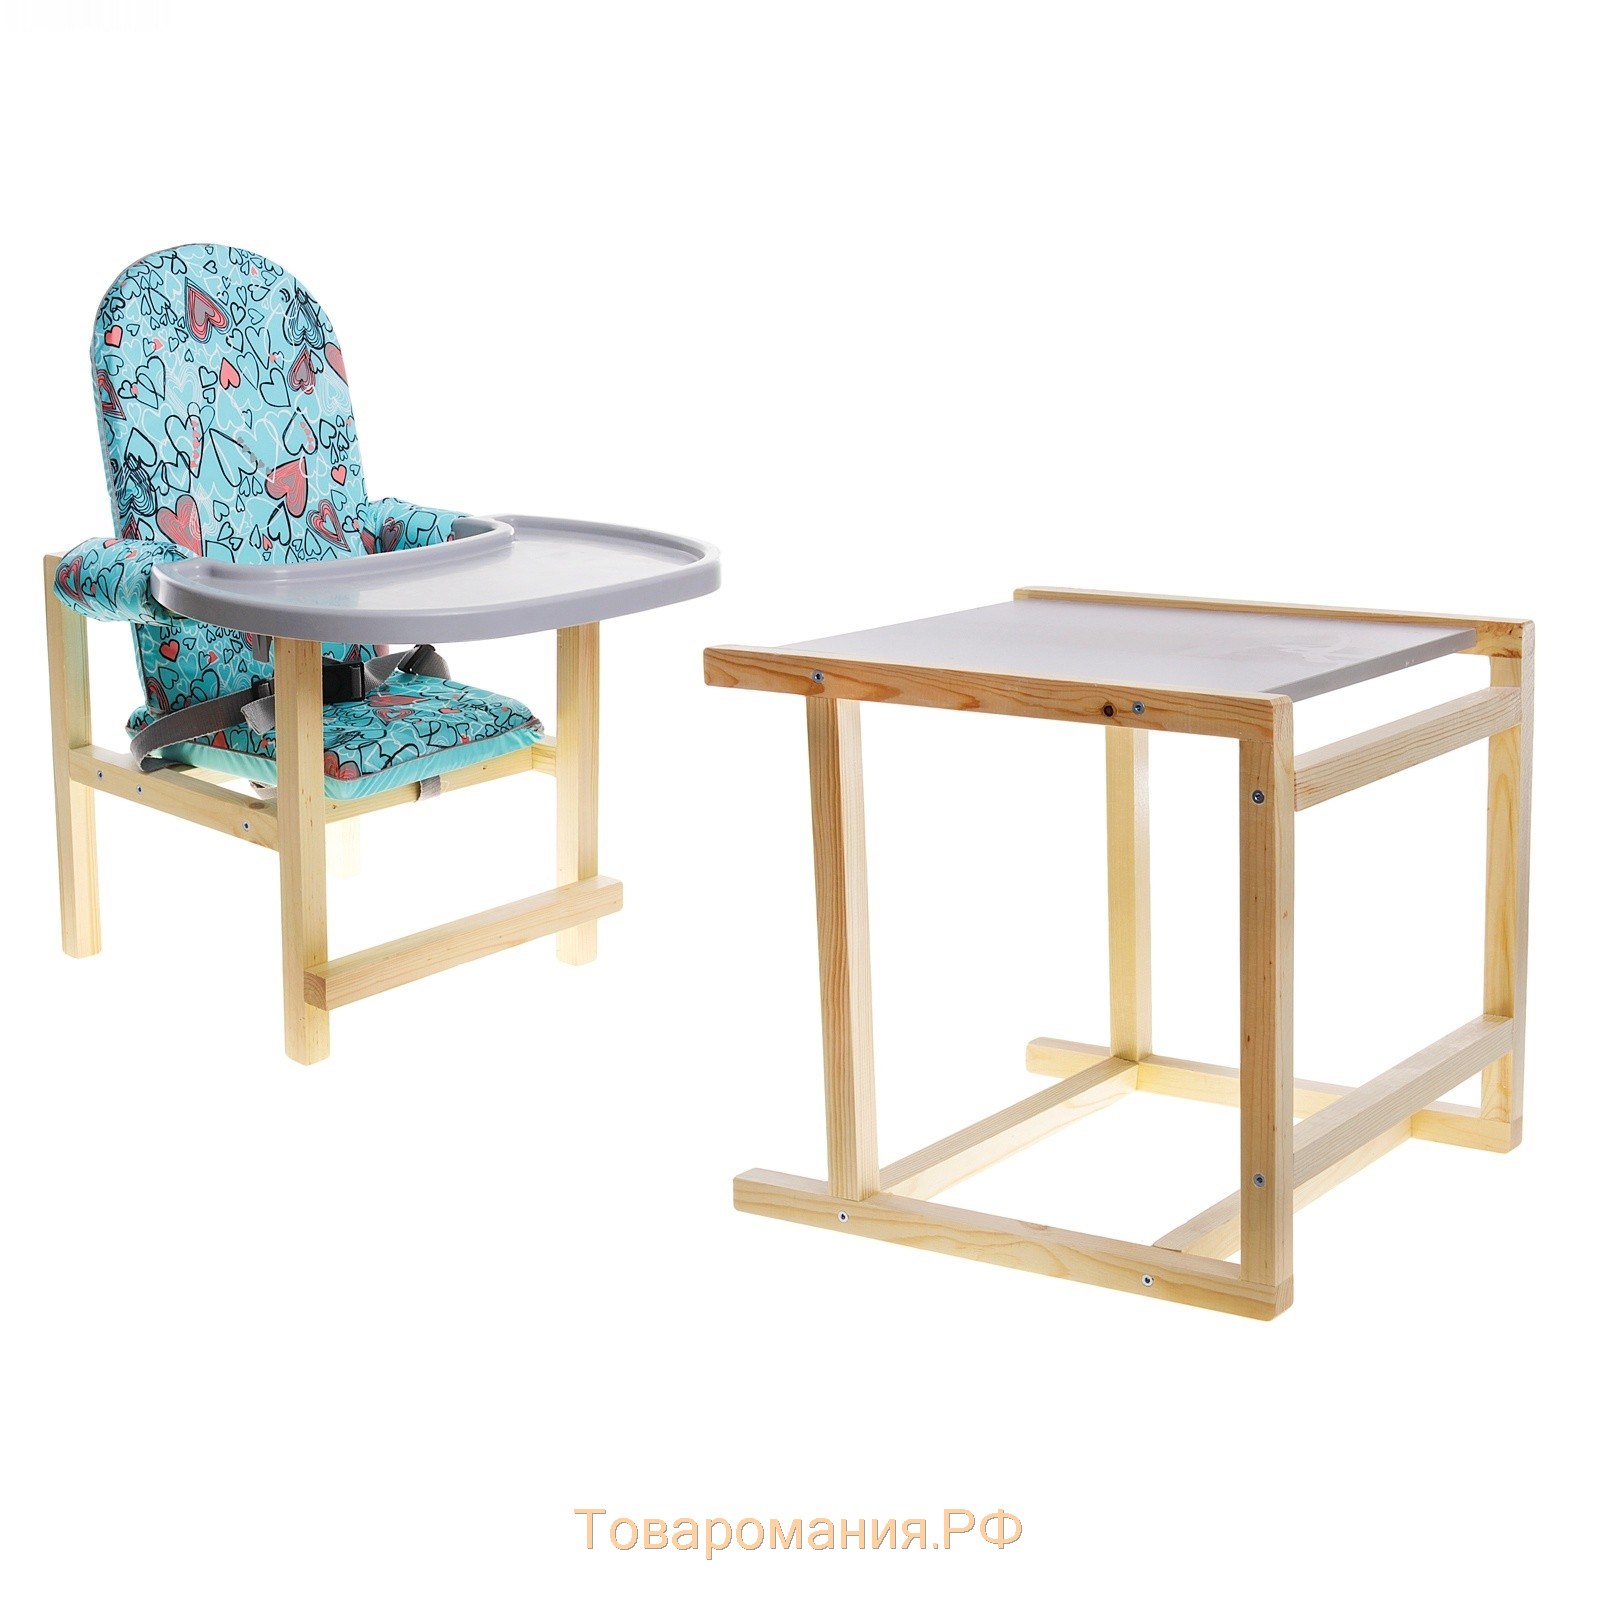 деревянный стол и стульчик для кормления